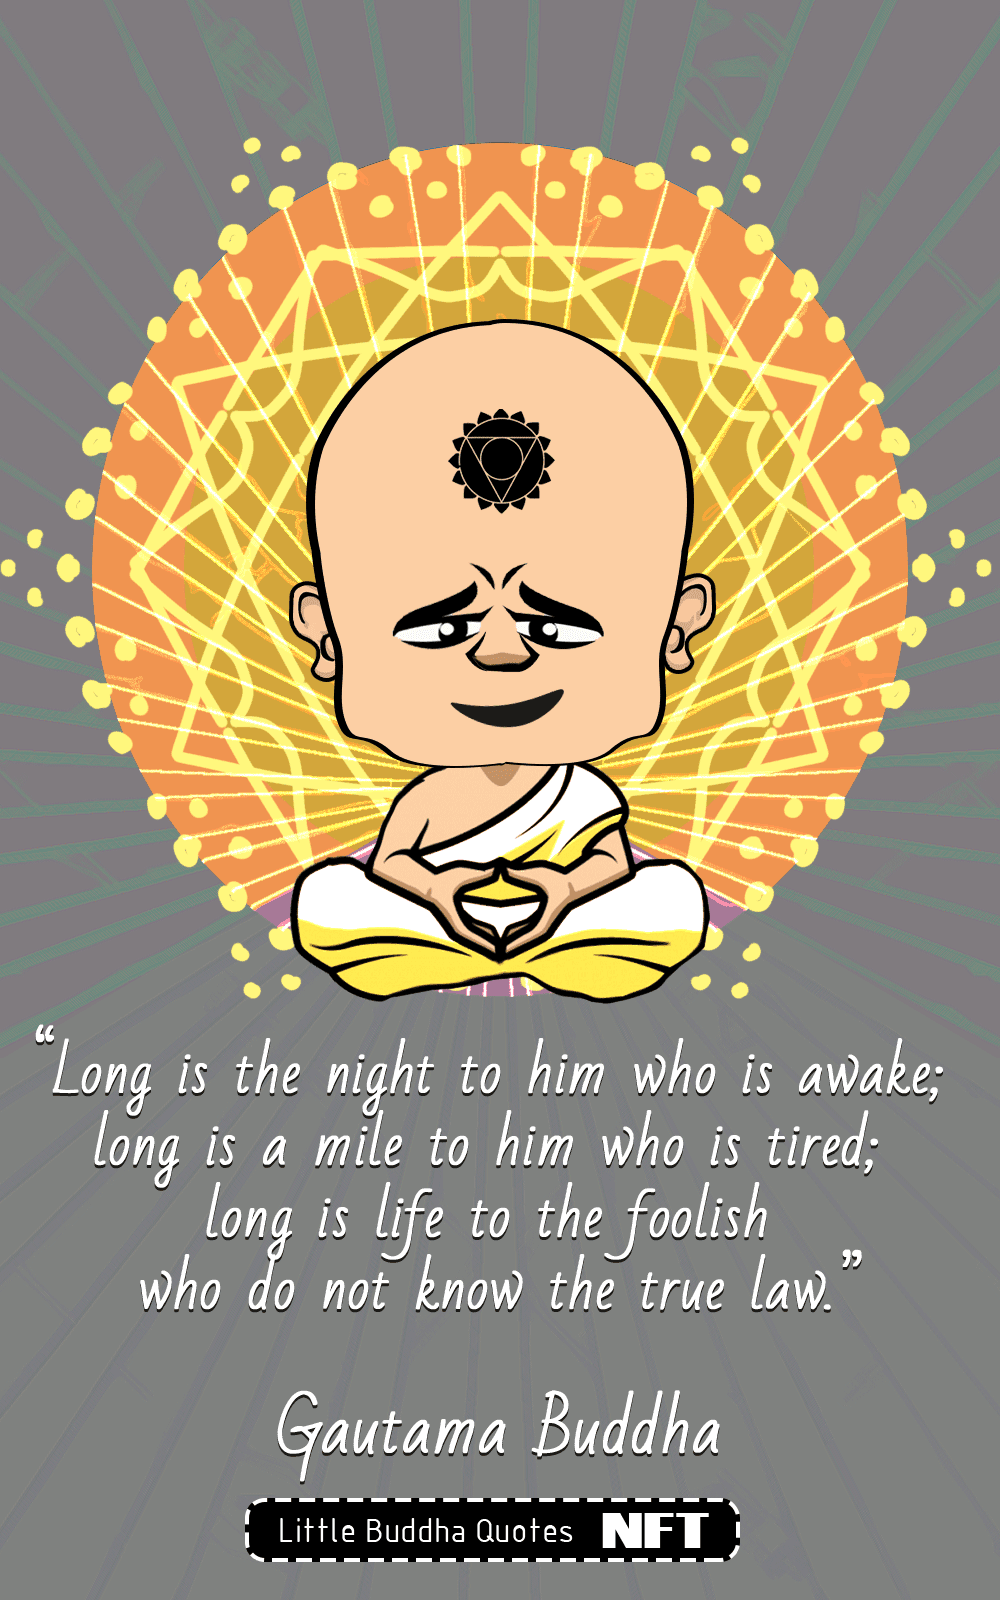 Little Buddha Quotes #270 - Little Buddha Quotes NFT | OpenSea